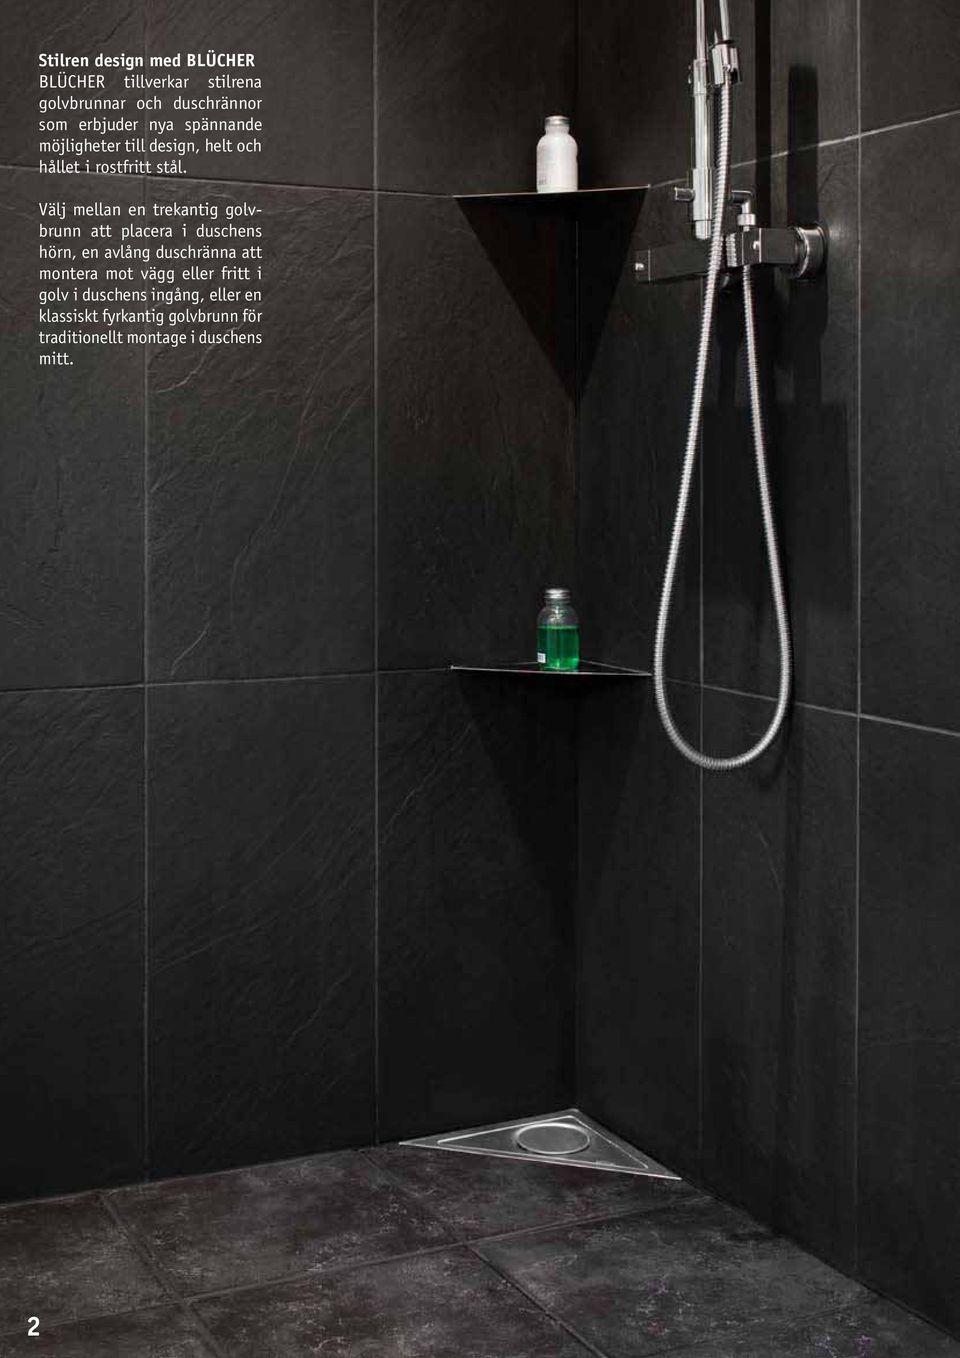 Välj mellan en trekantig golvbrunn att placera i duschens hörn, en avlång duschränna att montera